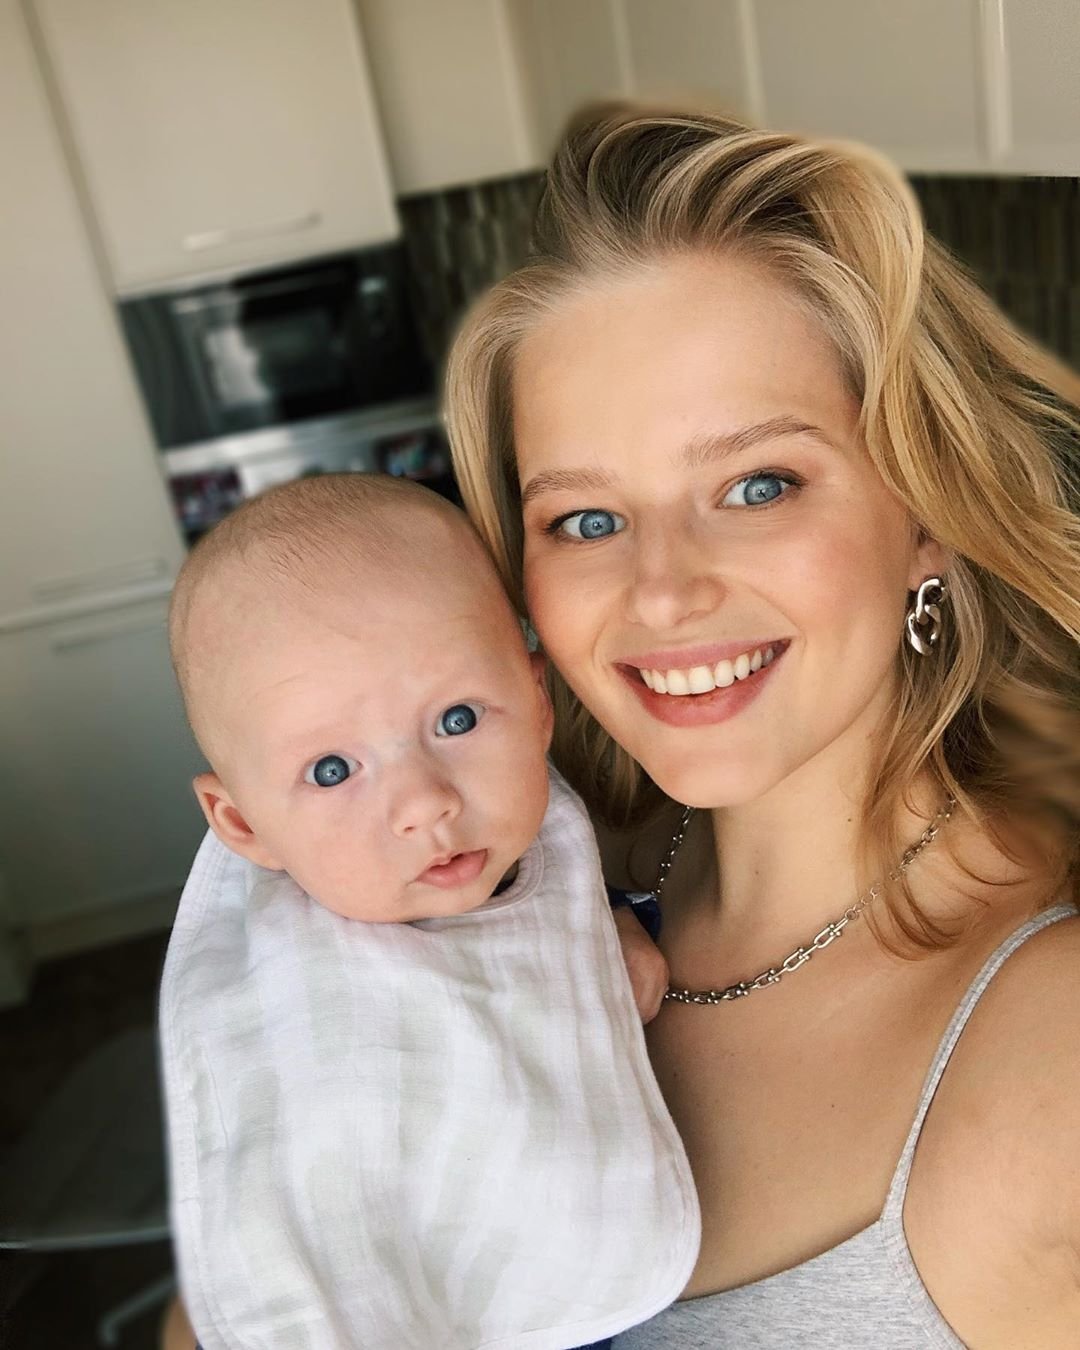 "Глаза нереальные!": Саша Бортич умилила сеть снимком новорожденного сына